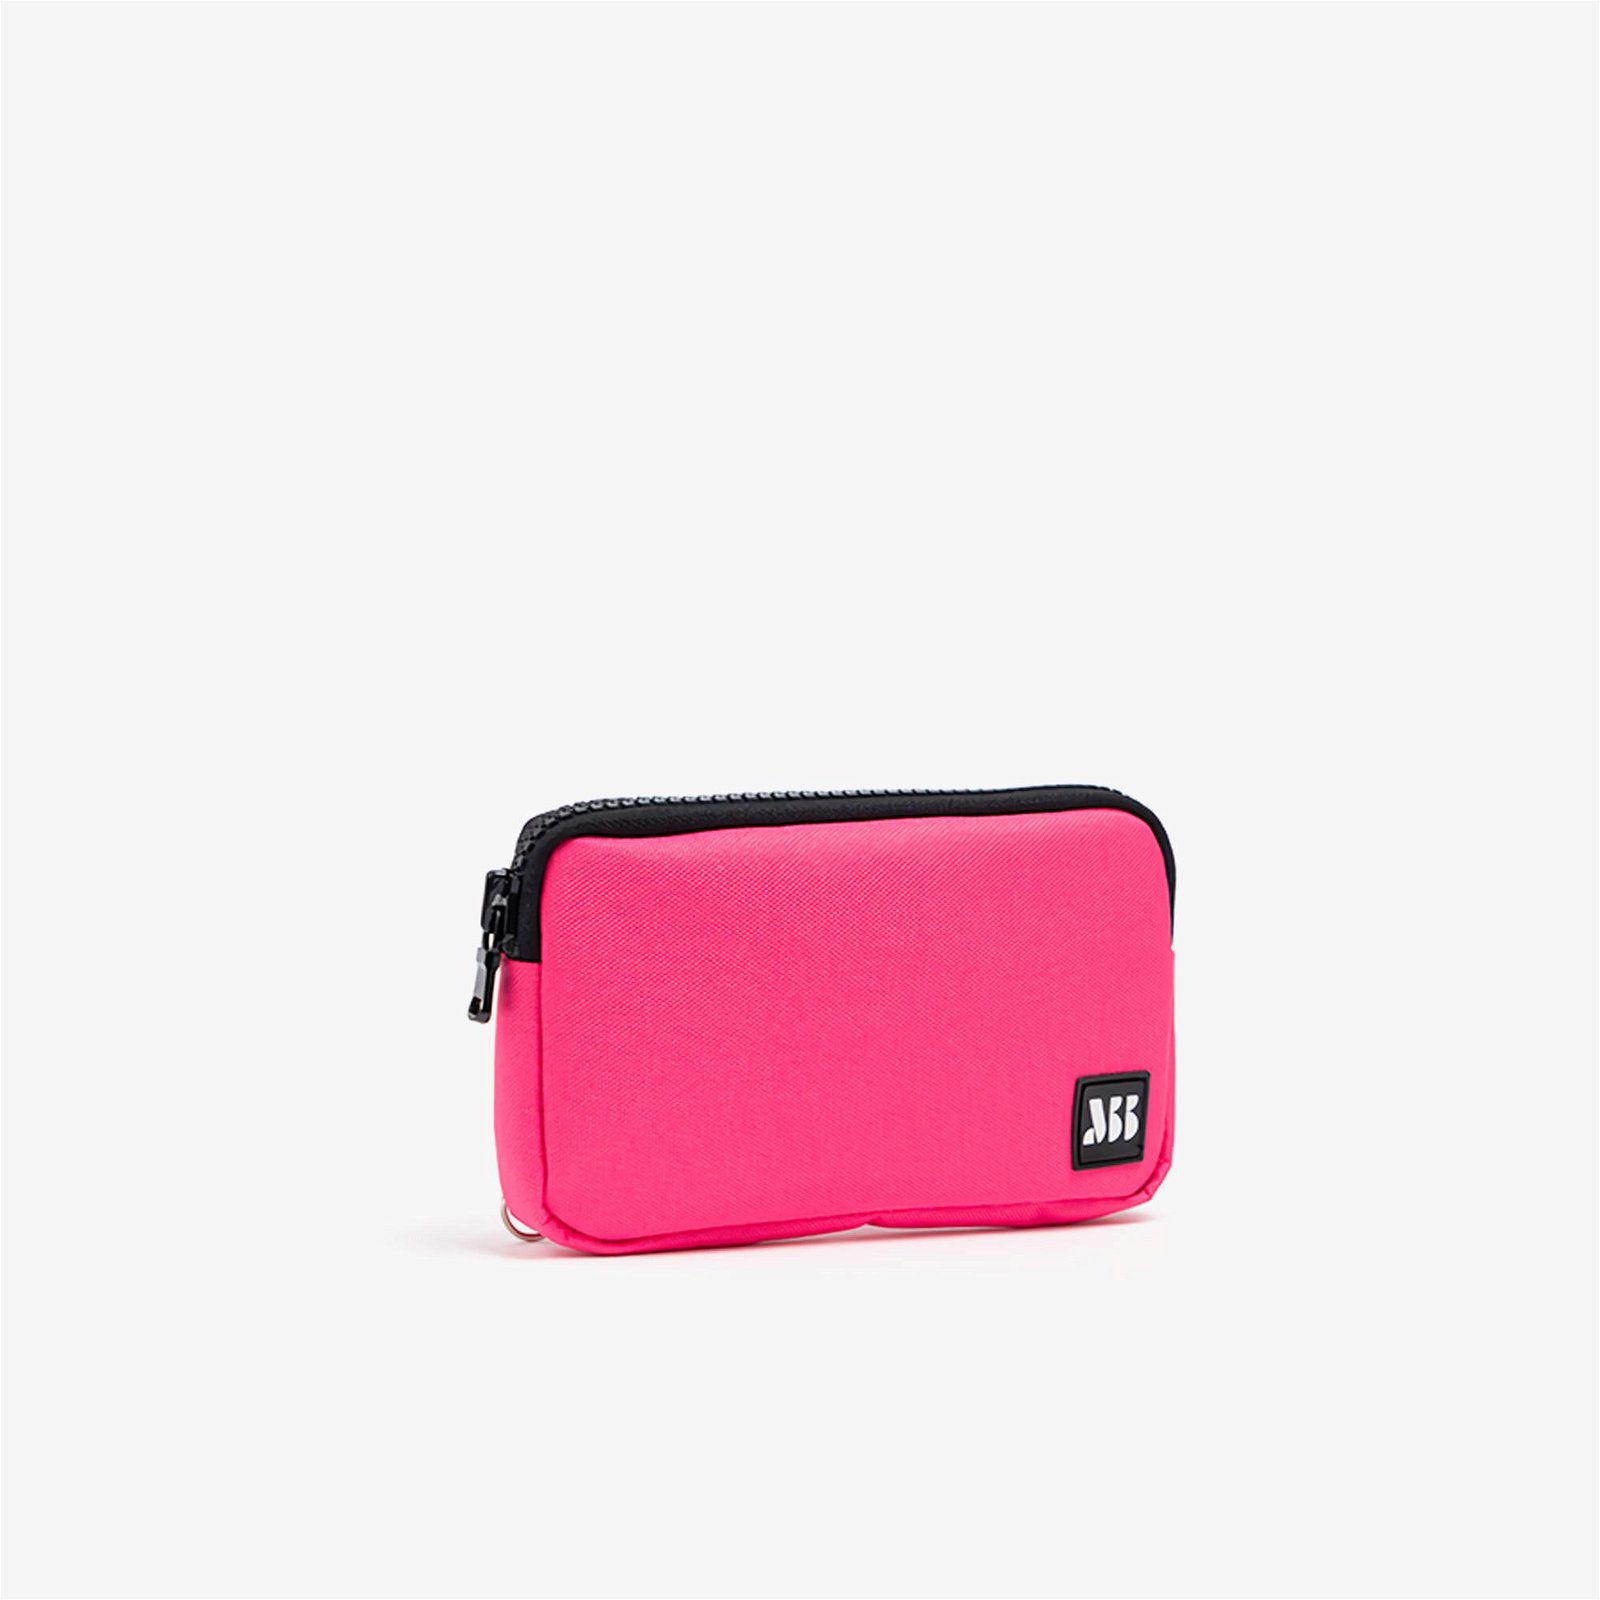 MuniBum Bag Neon Pink Phone Bag